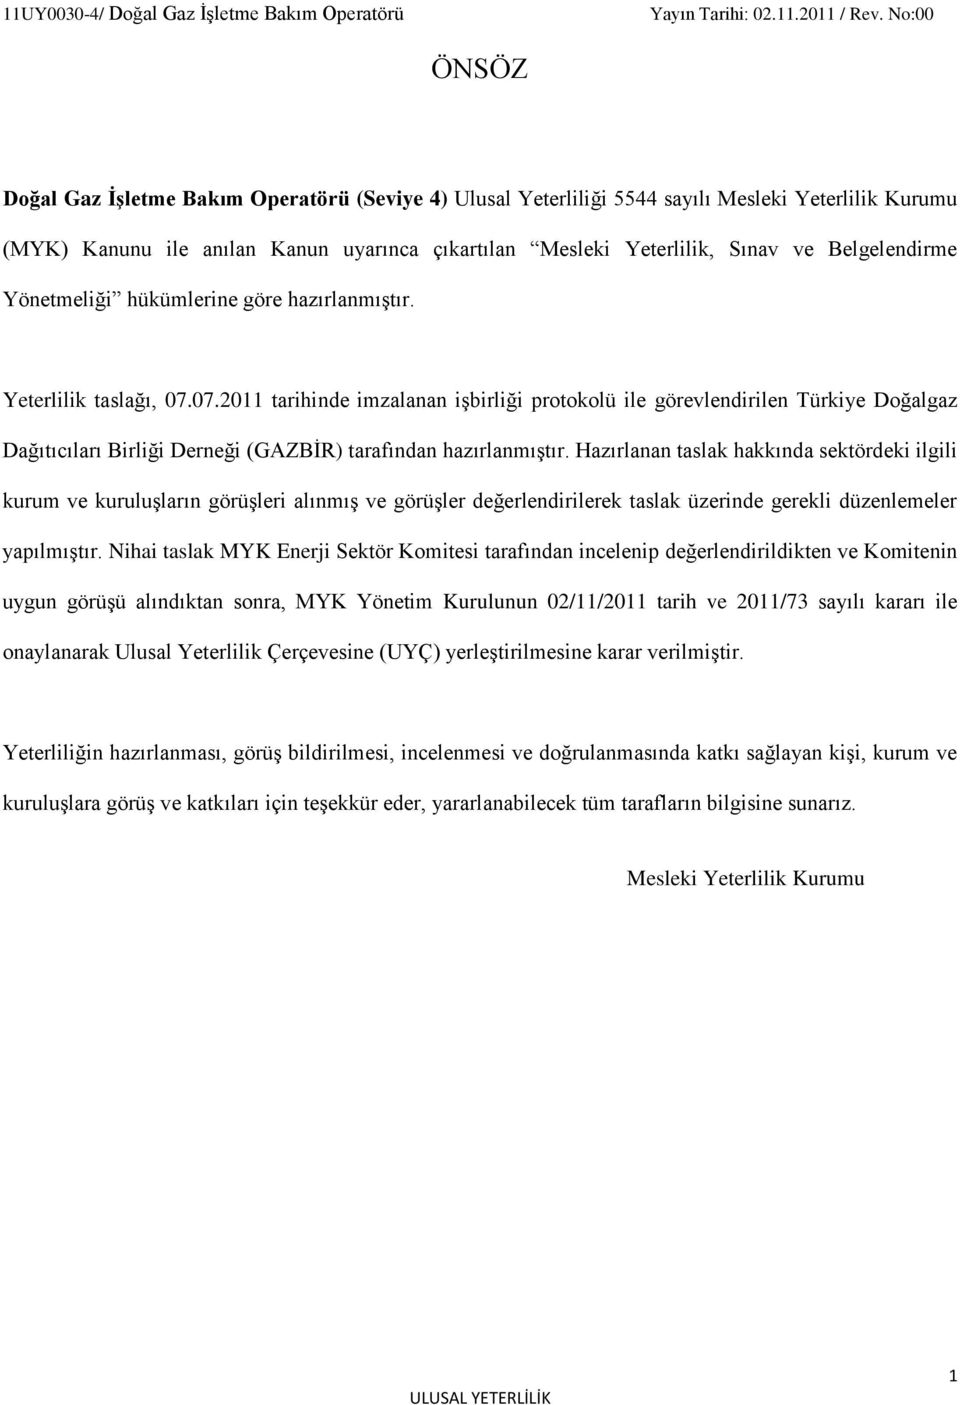 07.2011 tarihinde imzalanan işbirliği protokolü ile görevlendirilen Türkiye Doğalgaz Dağıtıcıları Birliği Derneği (GAZBİR) tarafından hazırlanmıştır.